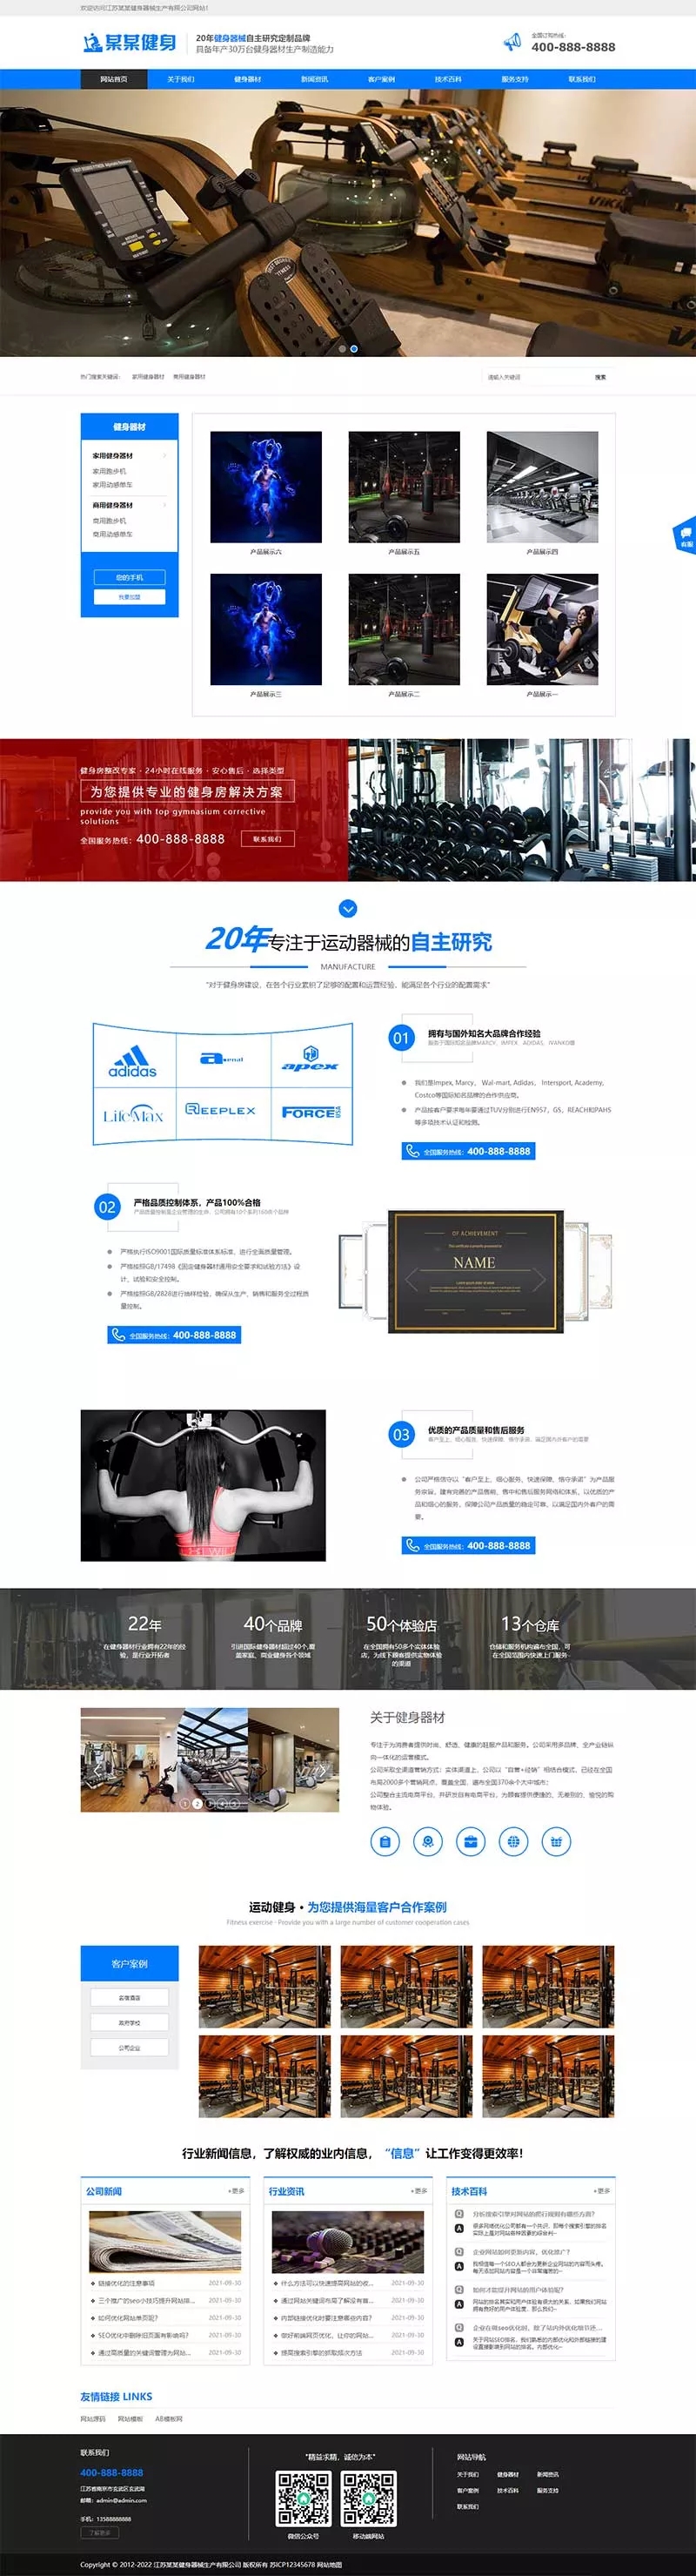 响应式营销型运动健身器材pbootcms网站模板插图源码资源库